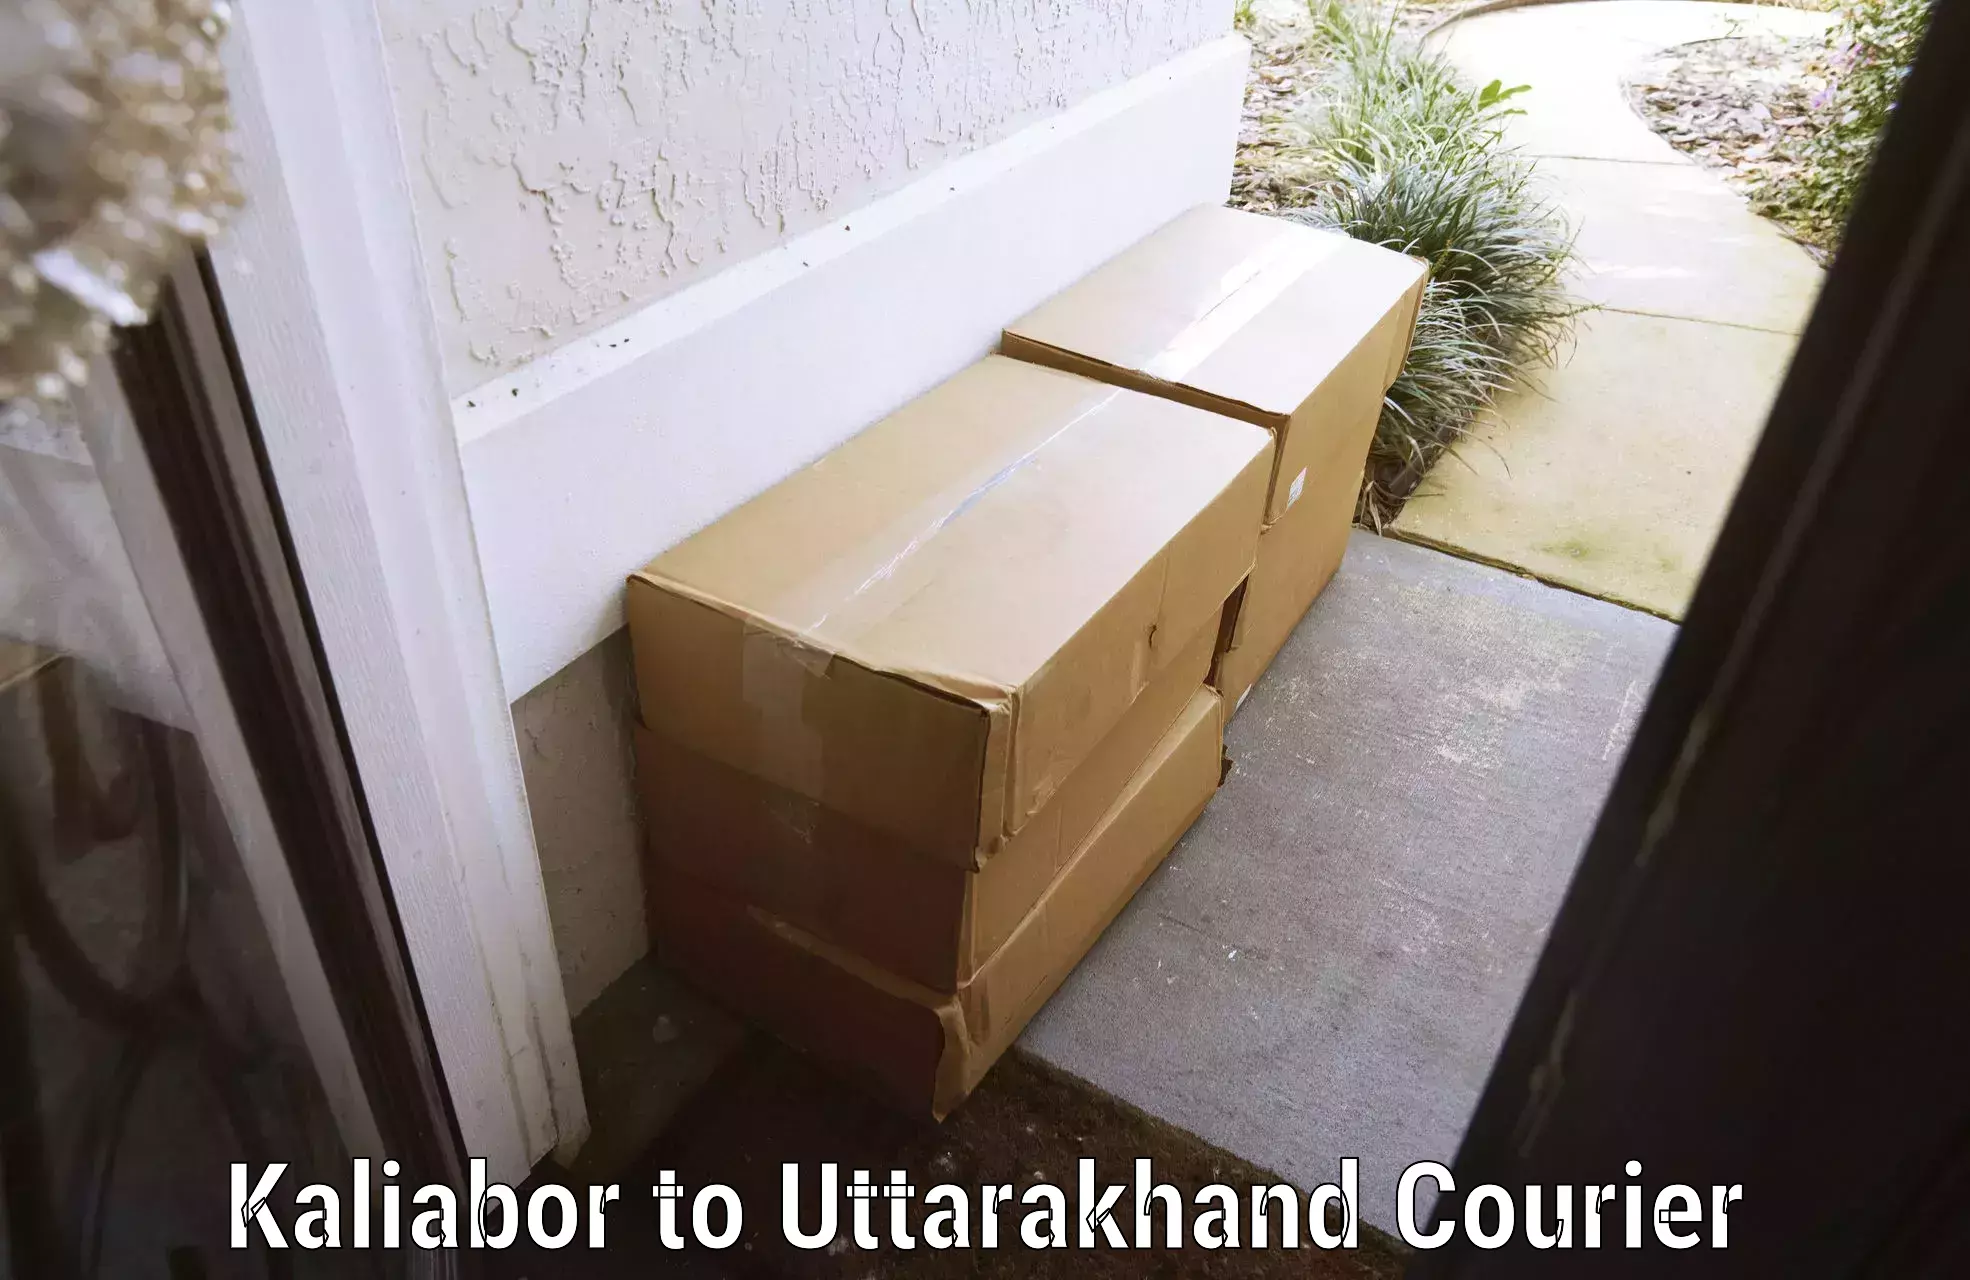 Luggage dispatch service Kaliabor to Uttarakhand